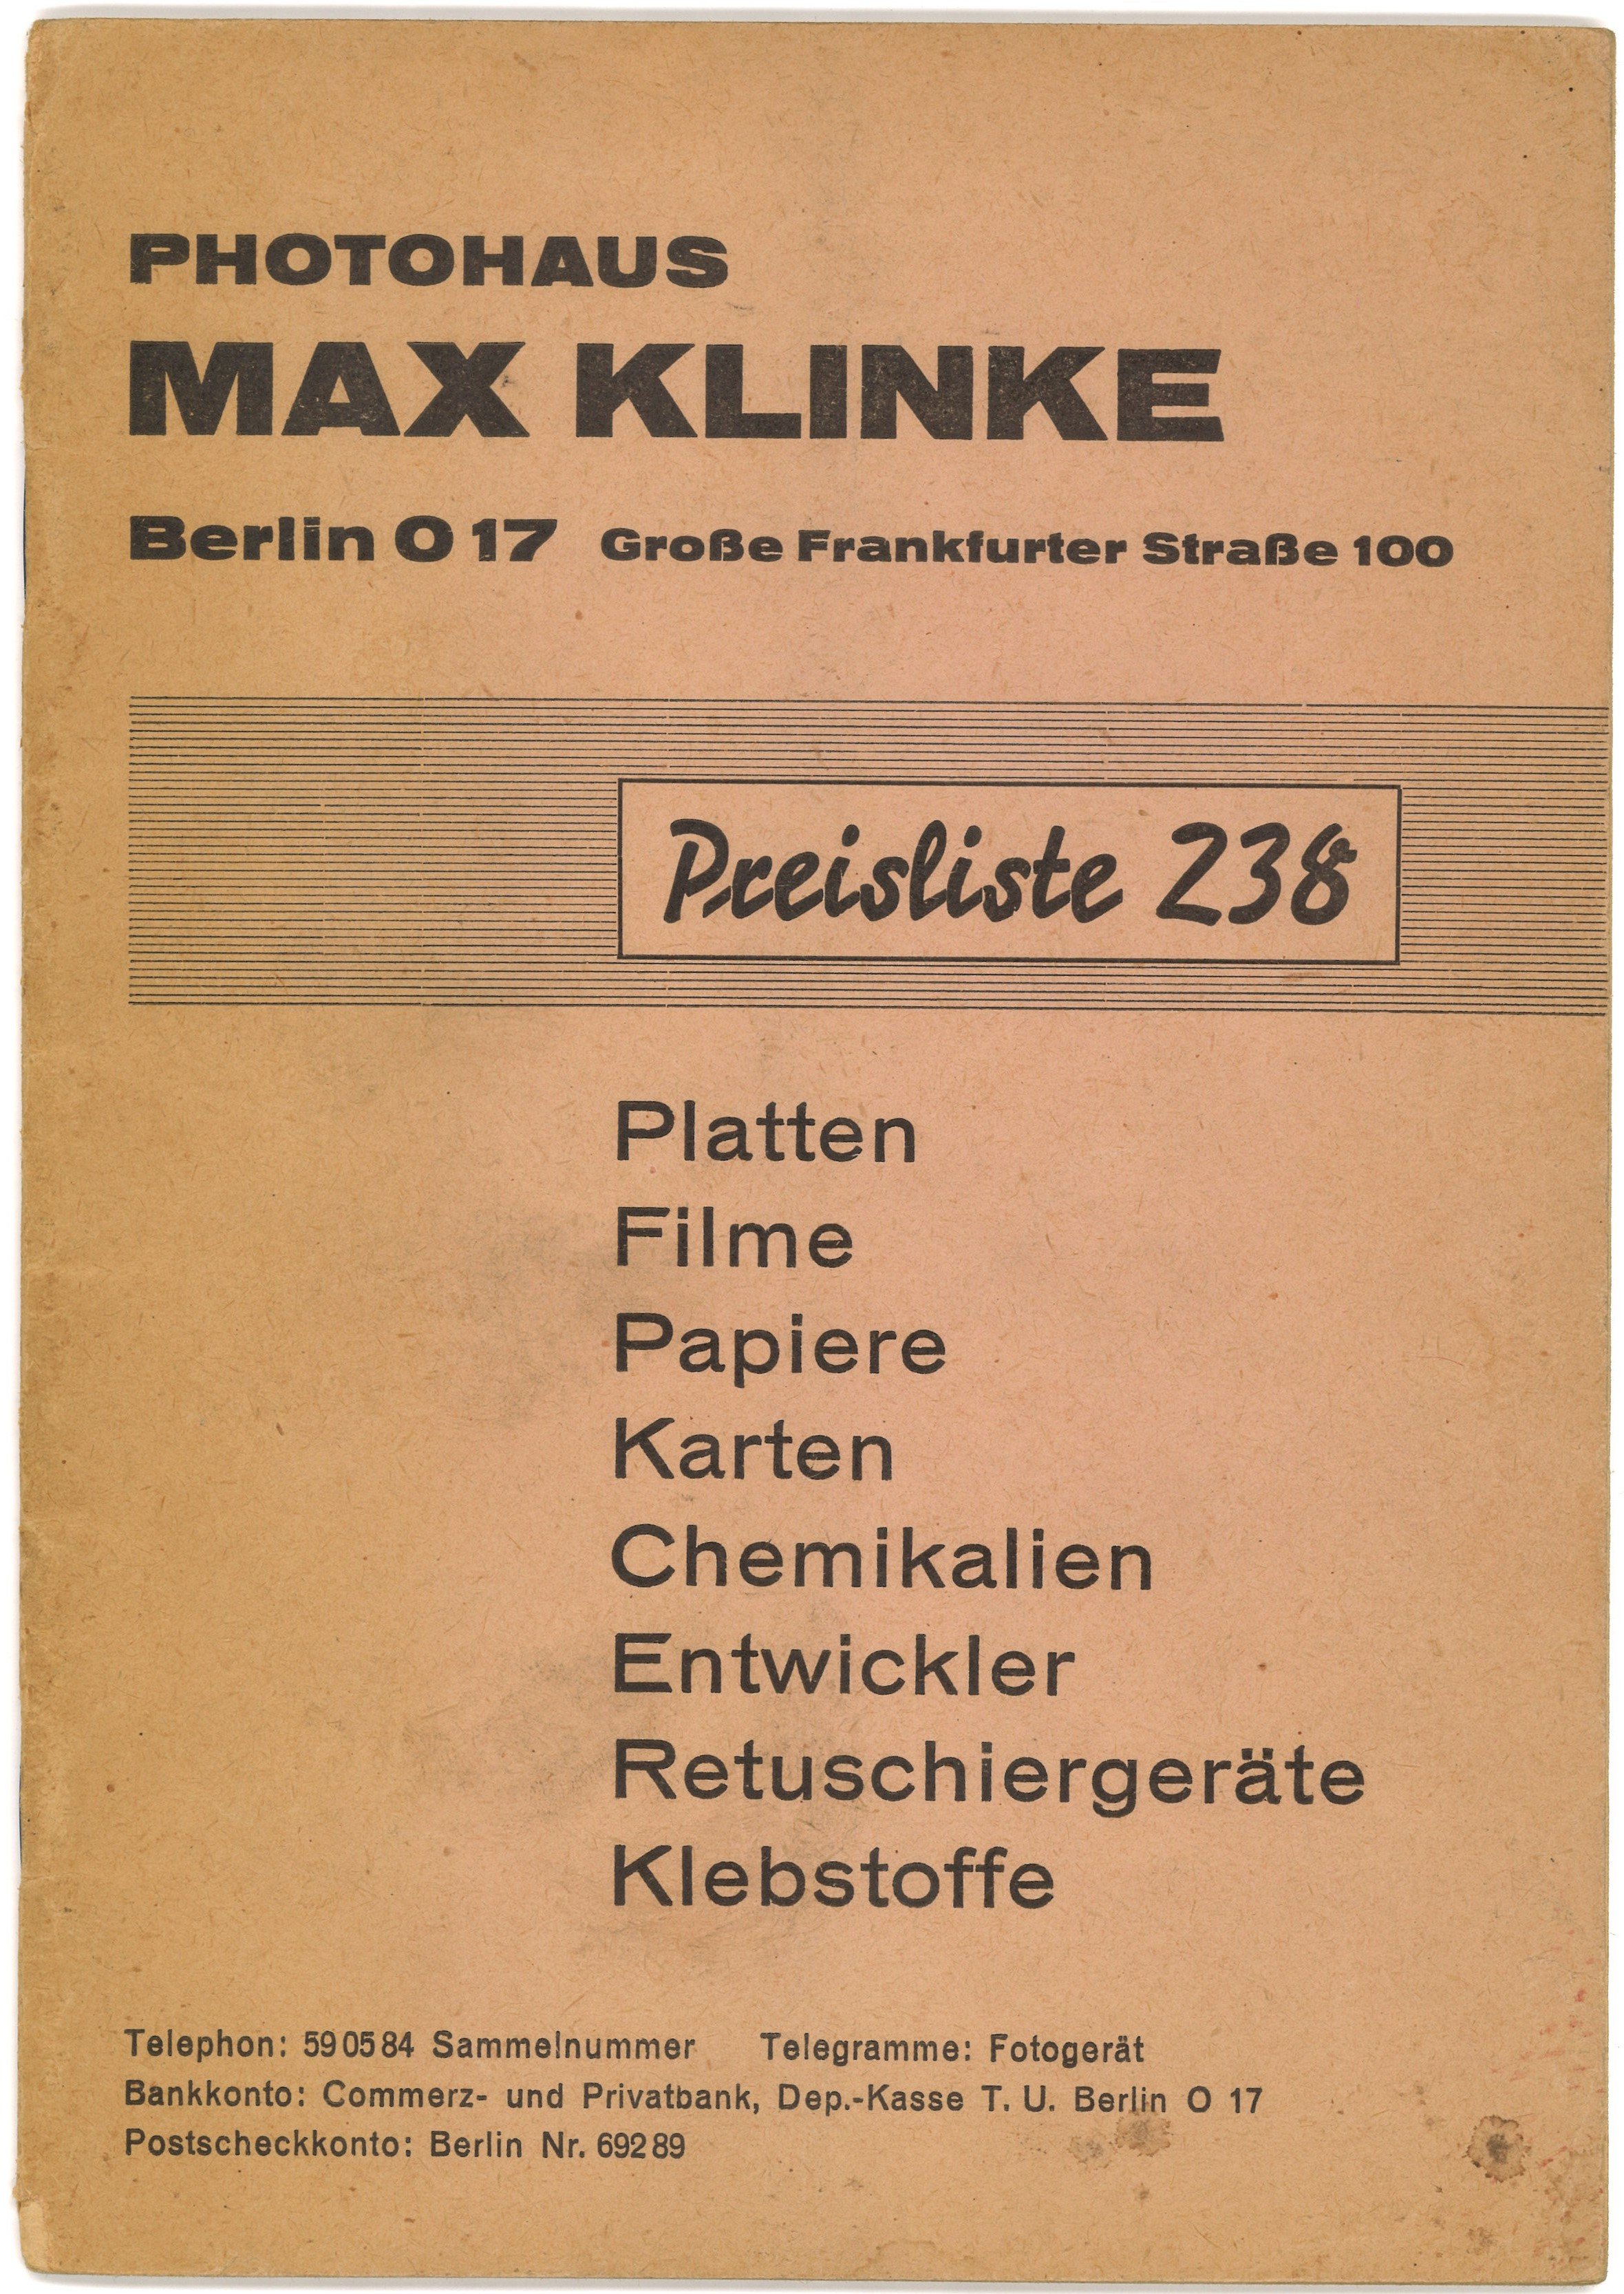 Photohaus Max Klinke, Berlin: Preisliste 238 (Landesgeschichtliche Vereinigung für die Mark Brandenburg e.V., Archiv CC BY)